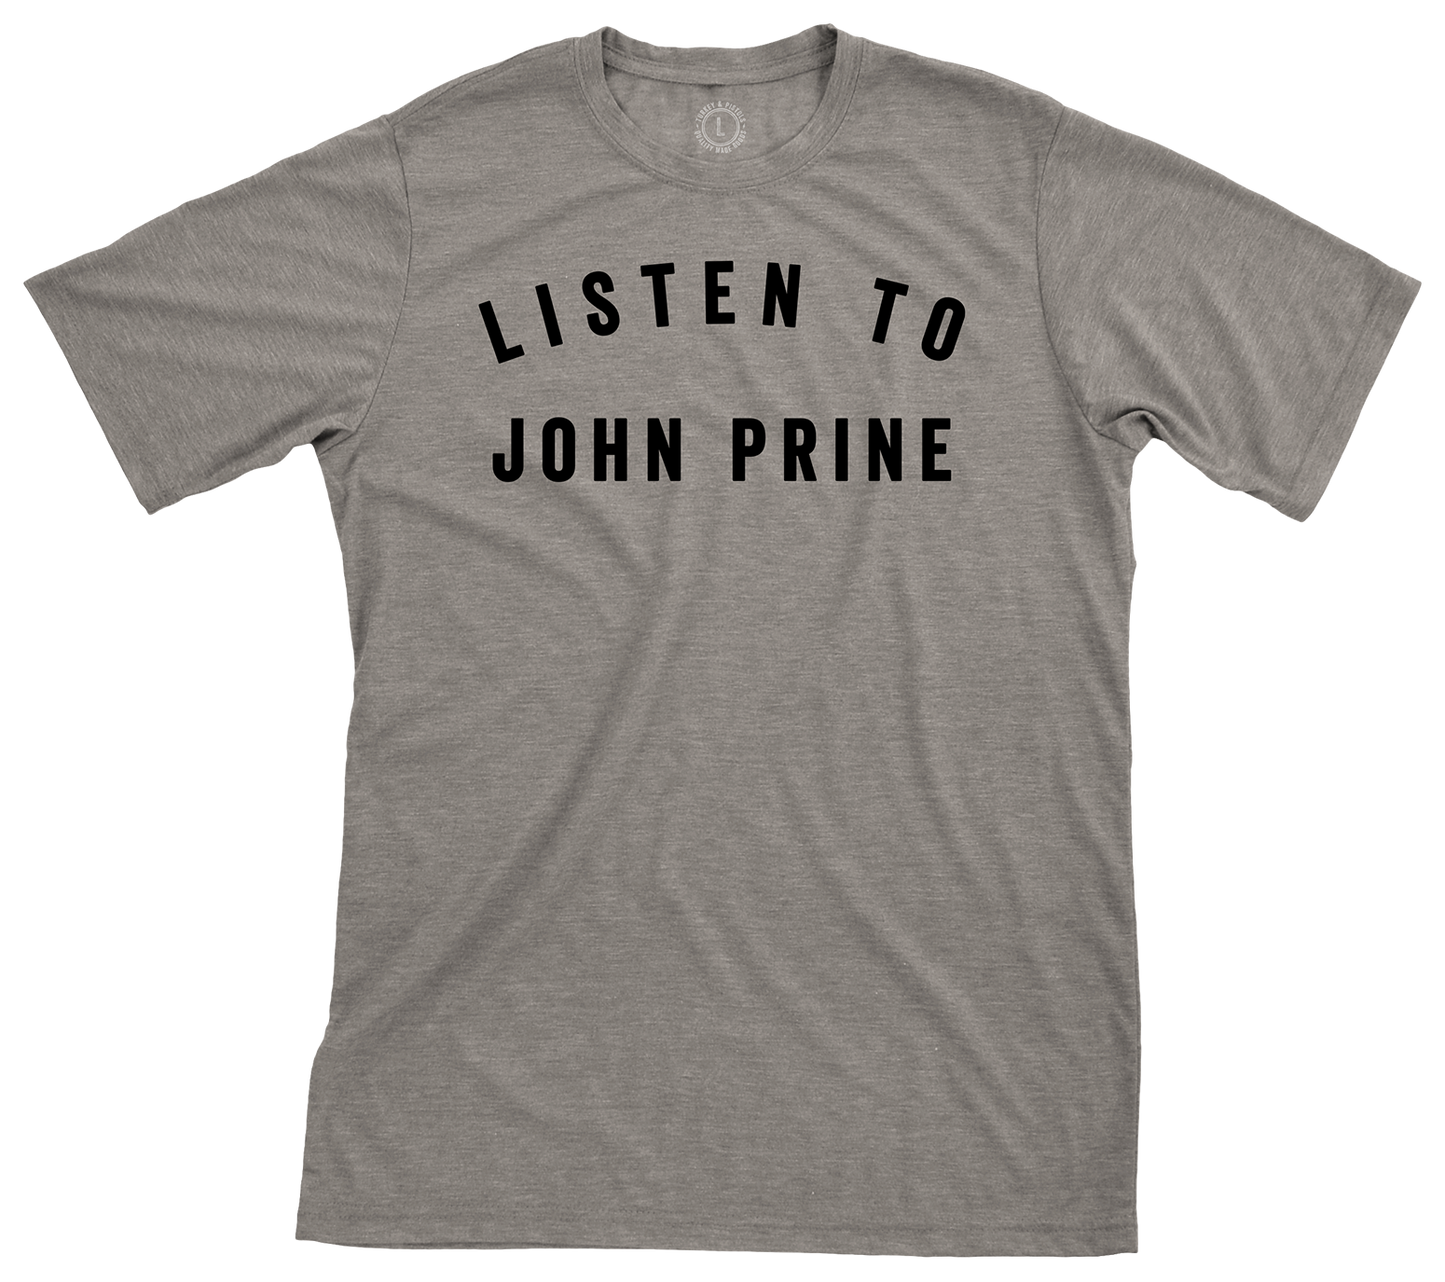 Listen to John Prine